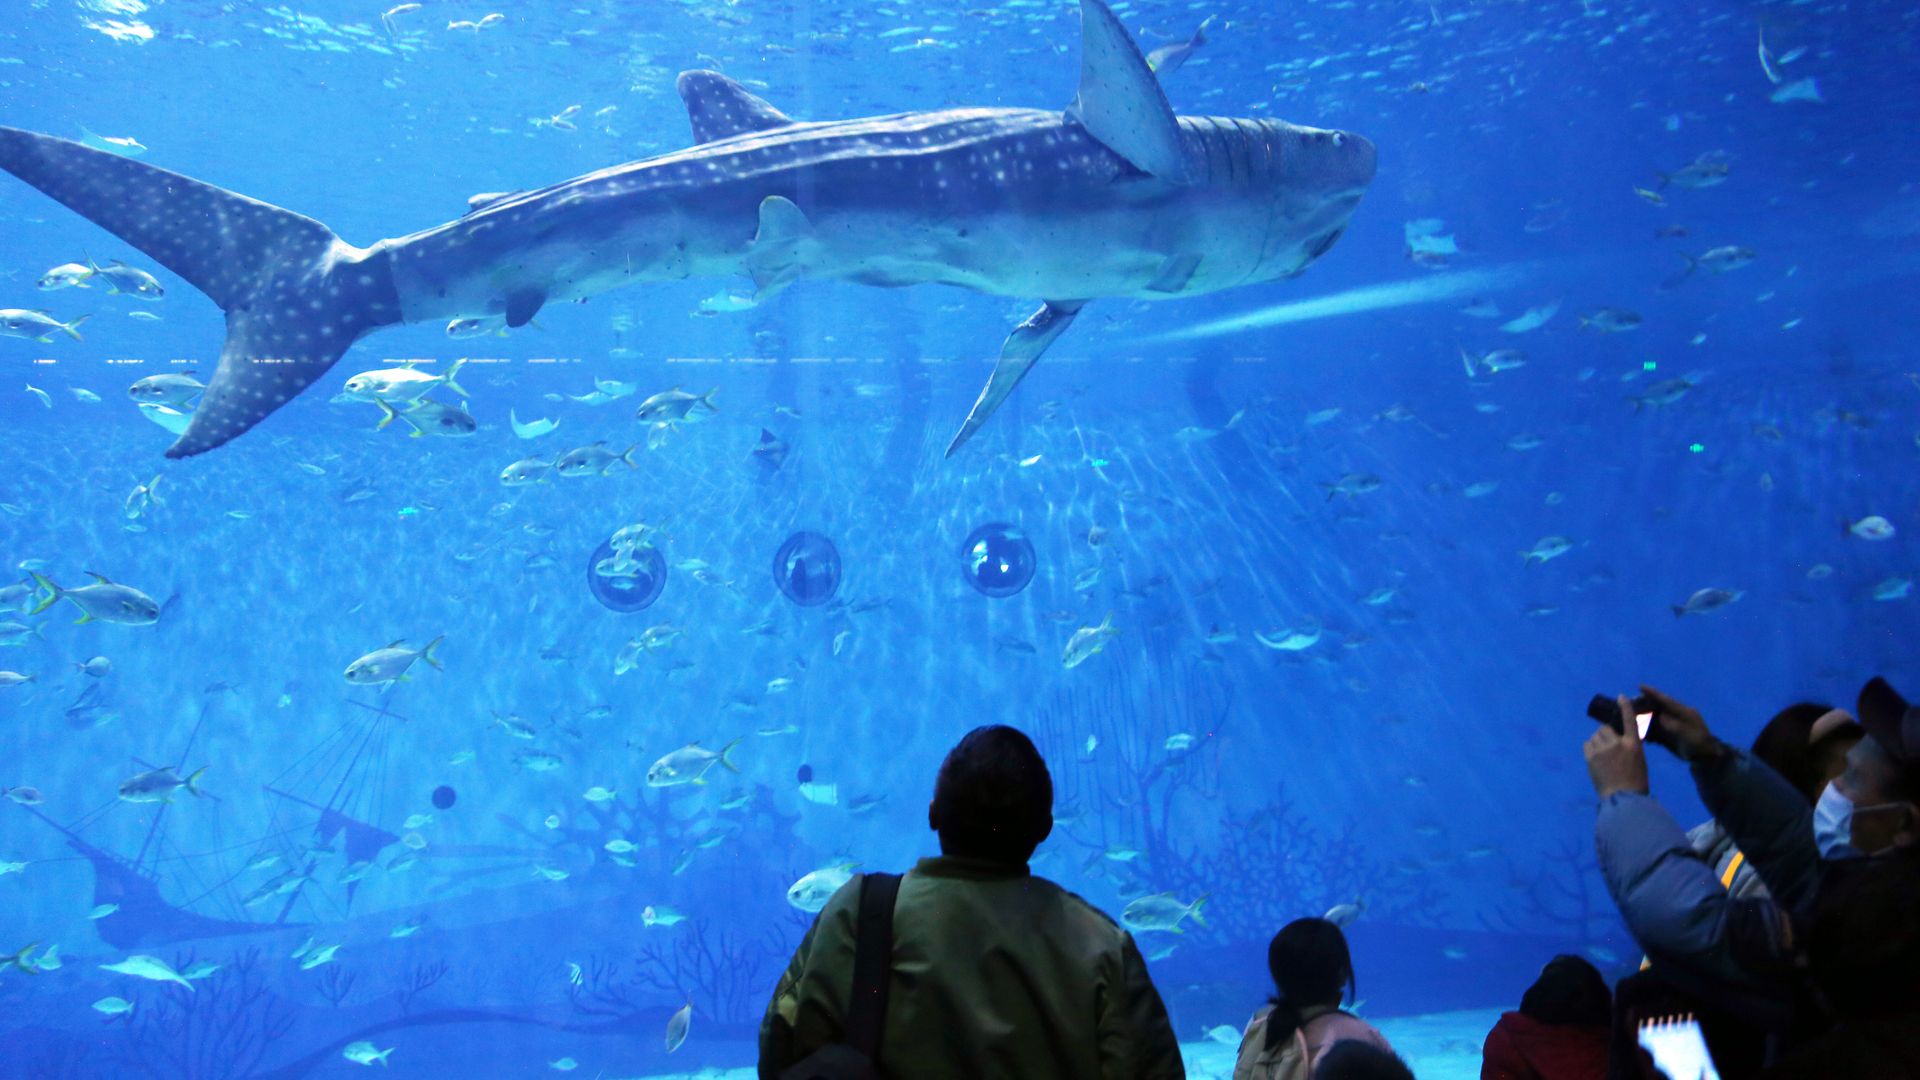 Visitors admire a bionic shark at an aquarium